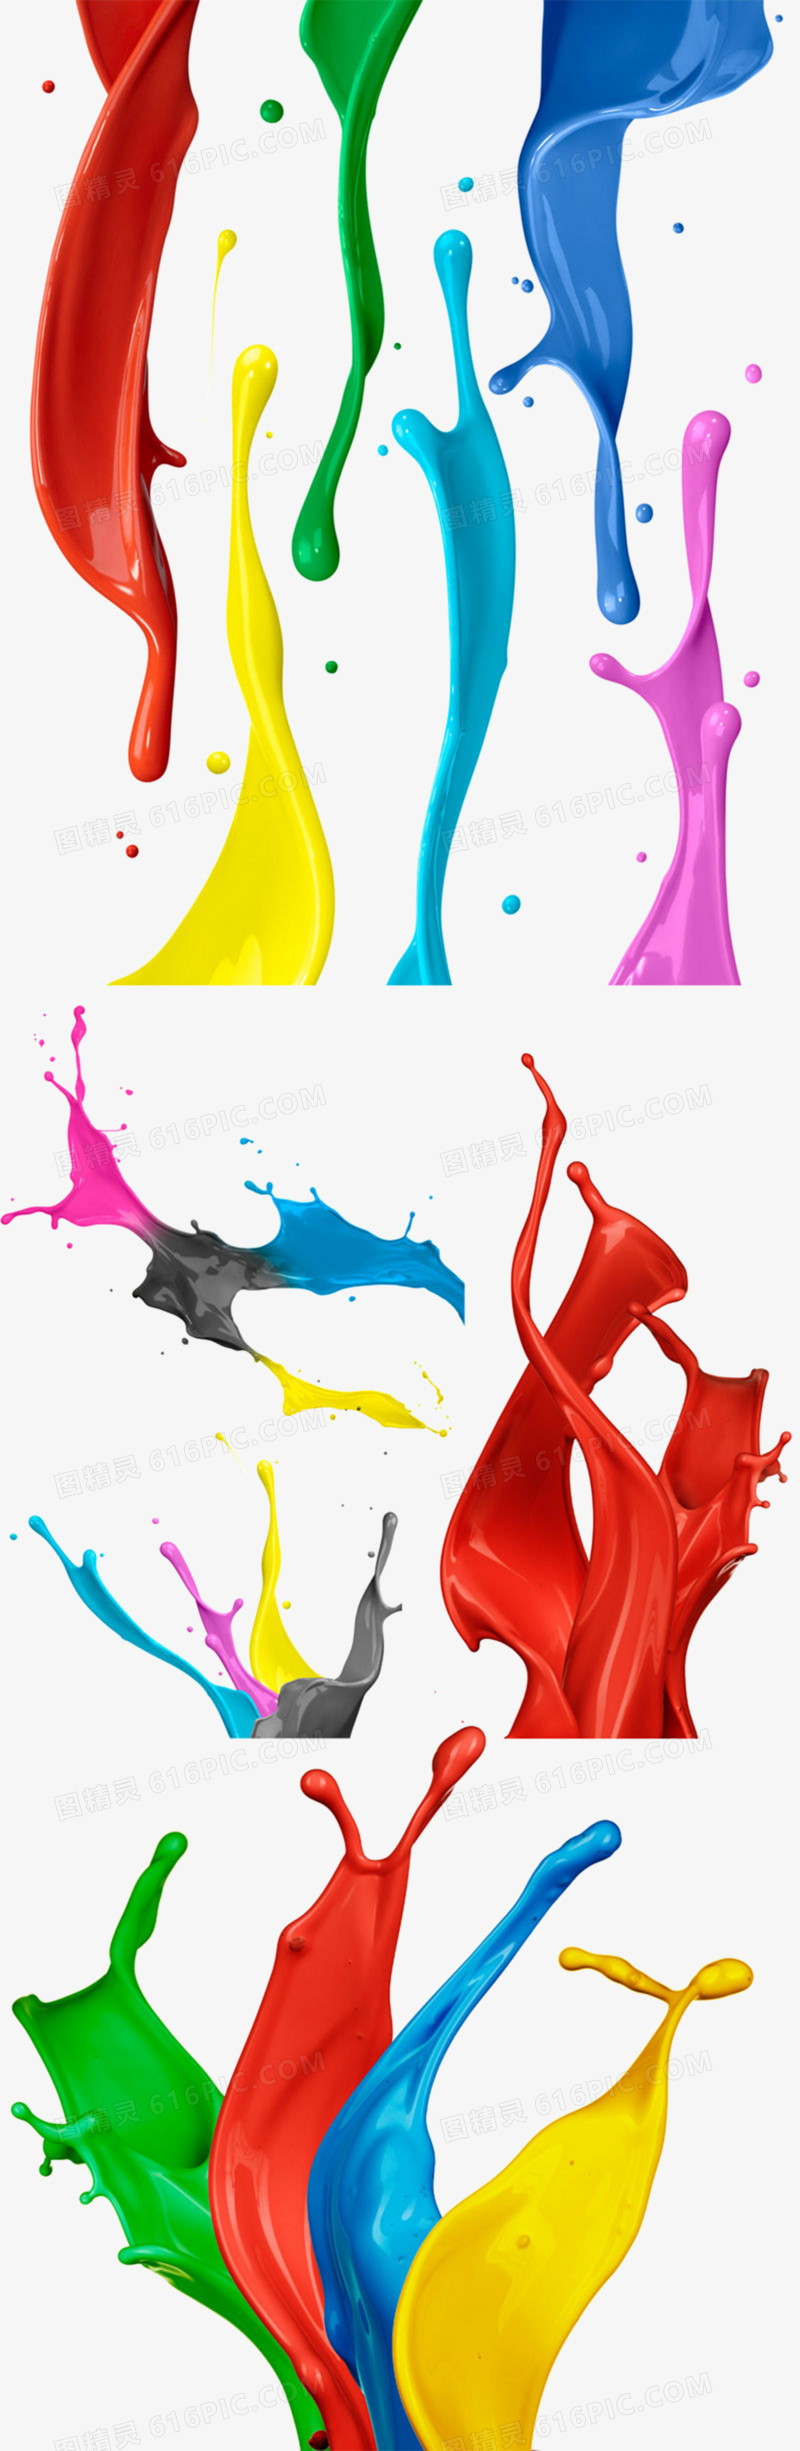 5种喷溅的彩色油漆